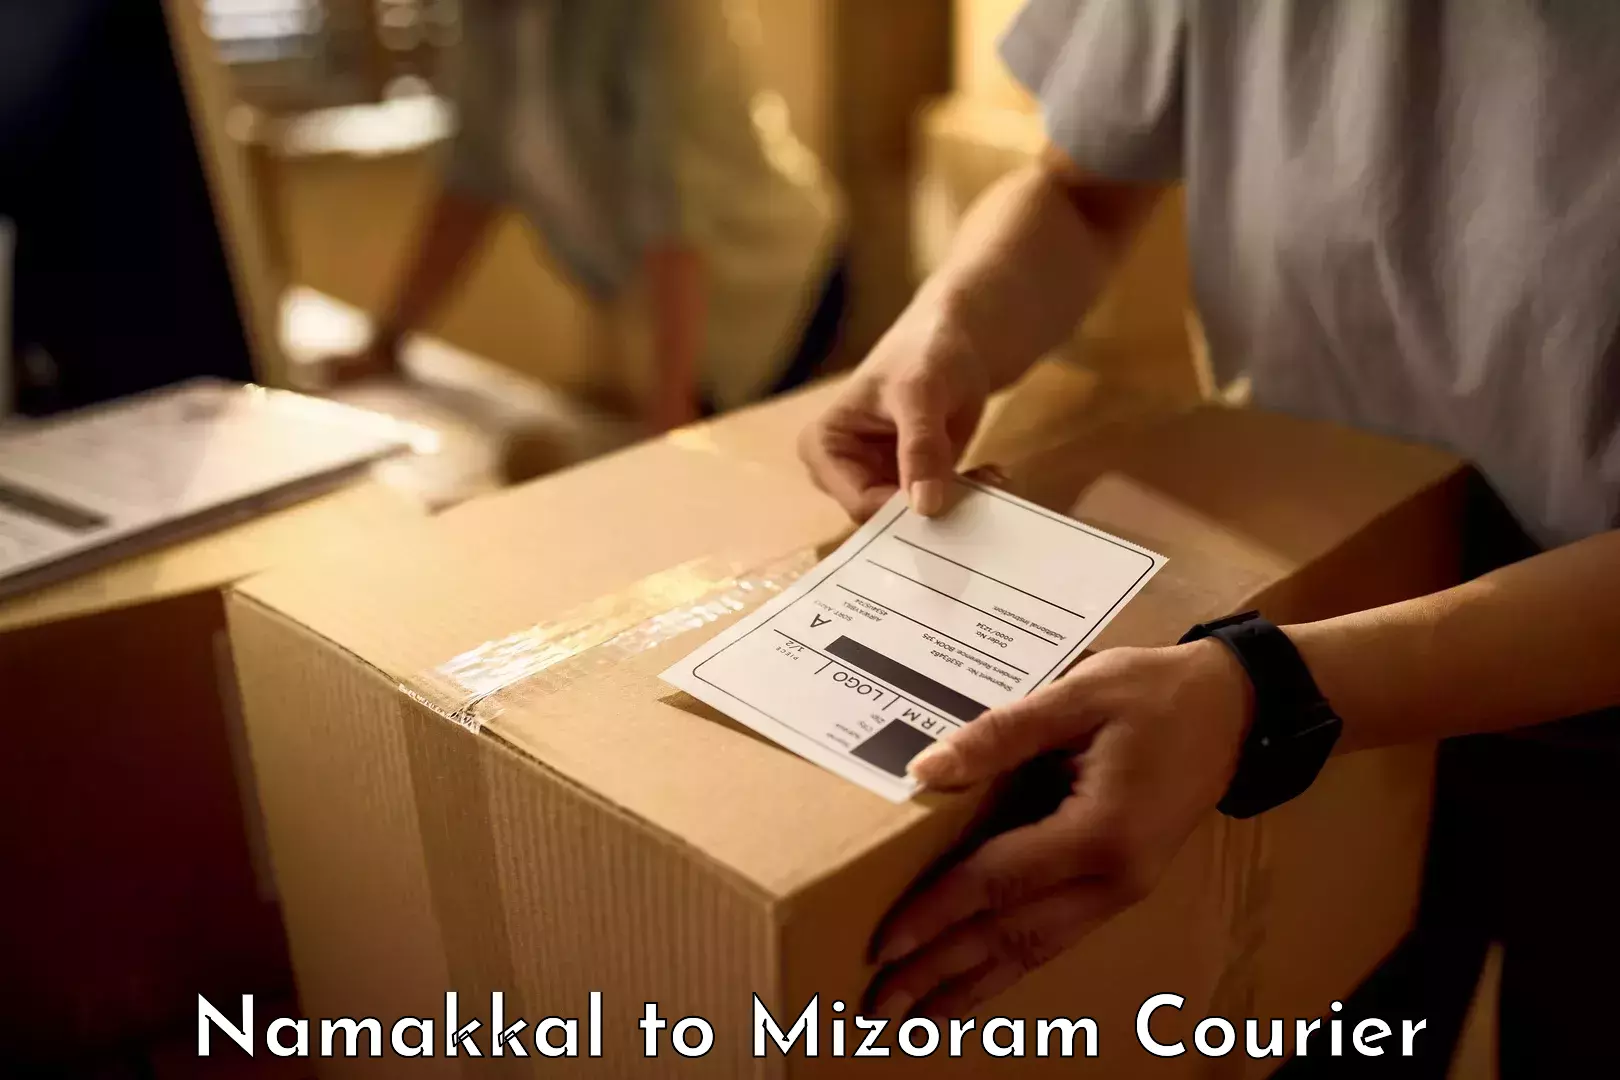 Luggage shipment specialists Namakkal to Mizoram